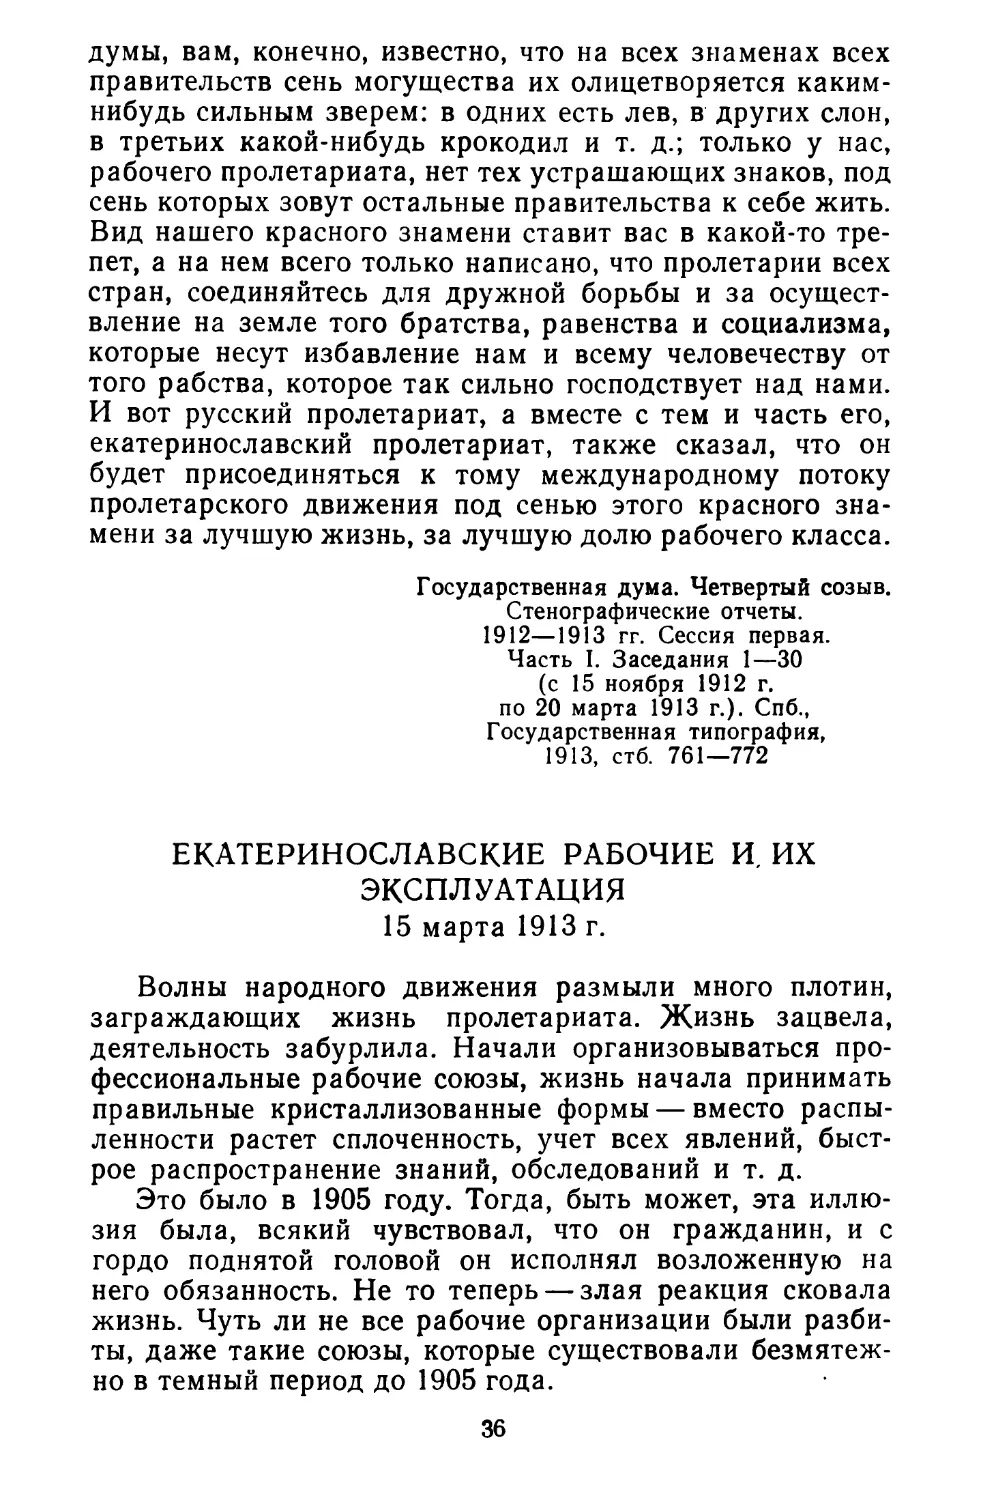 Екатеринославские рабочие и их эксплуатация. 15 марта 1913 г.